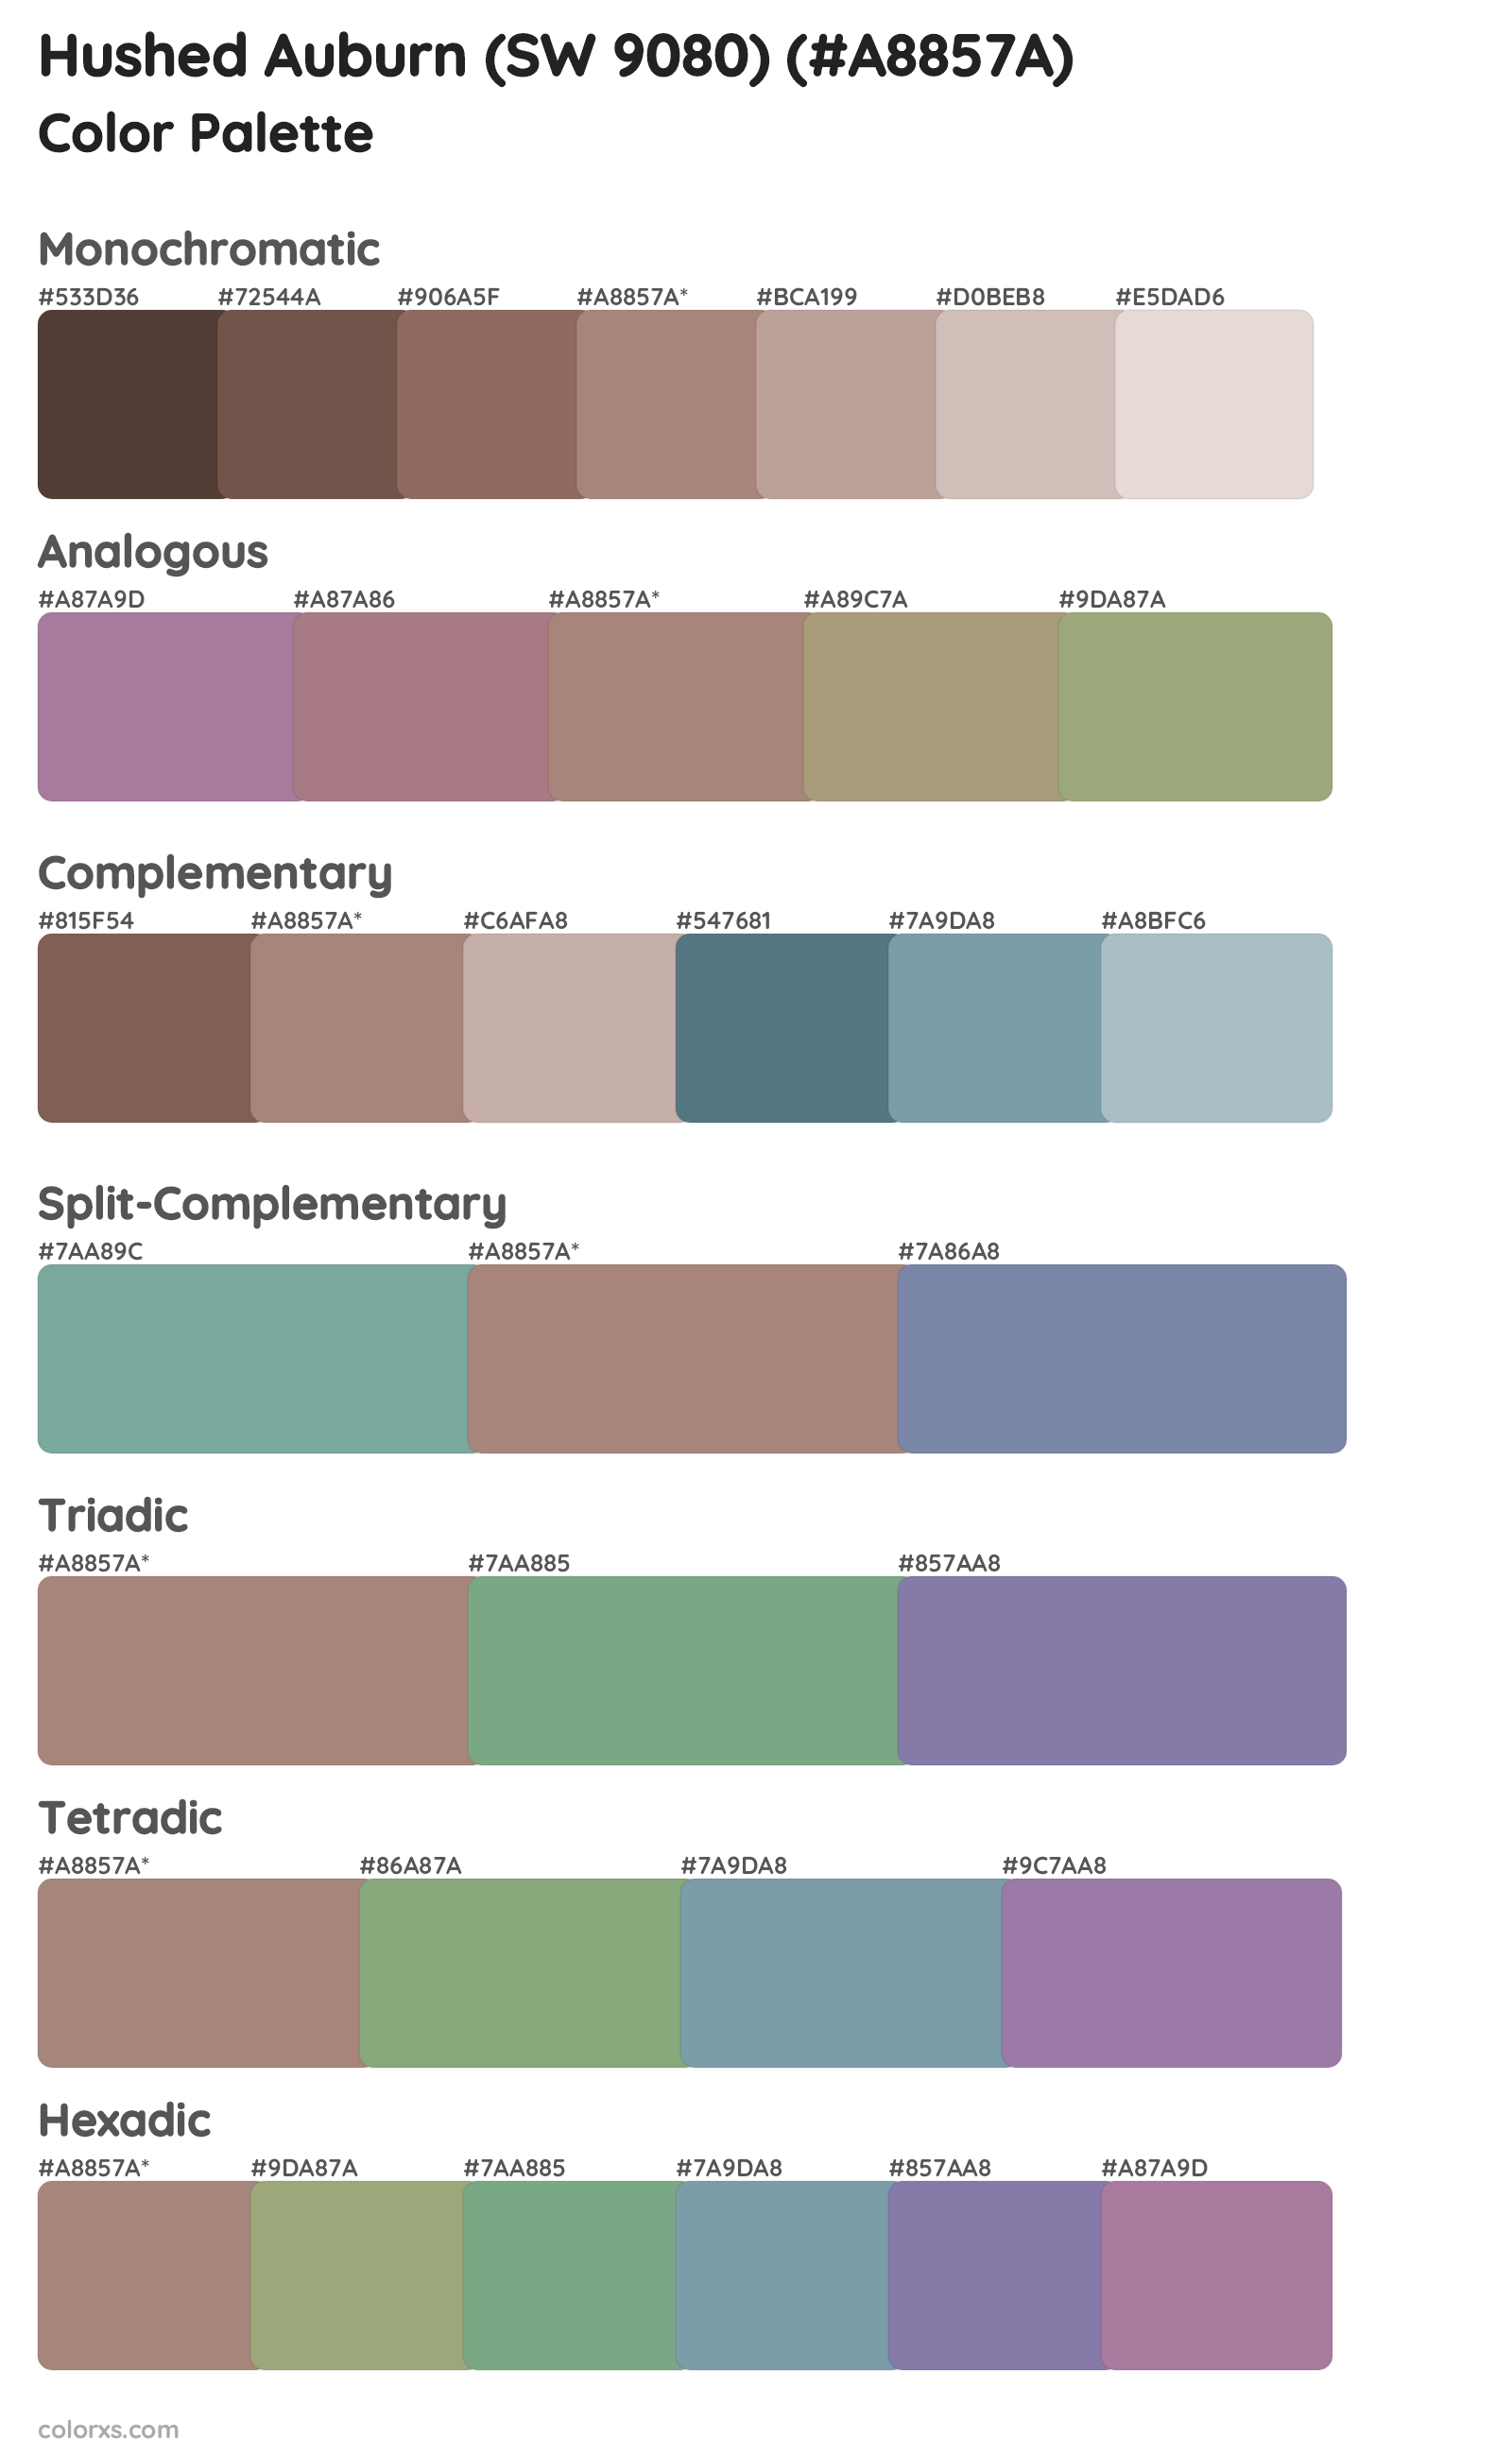 Hushed Auburn (SW 9080) Color Scheme Palettes